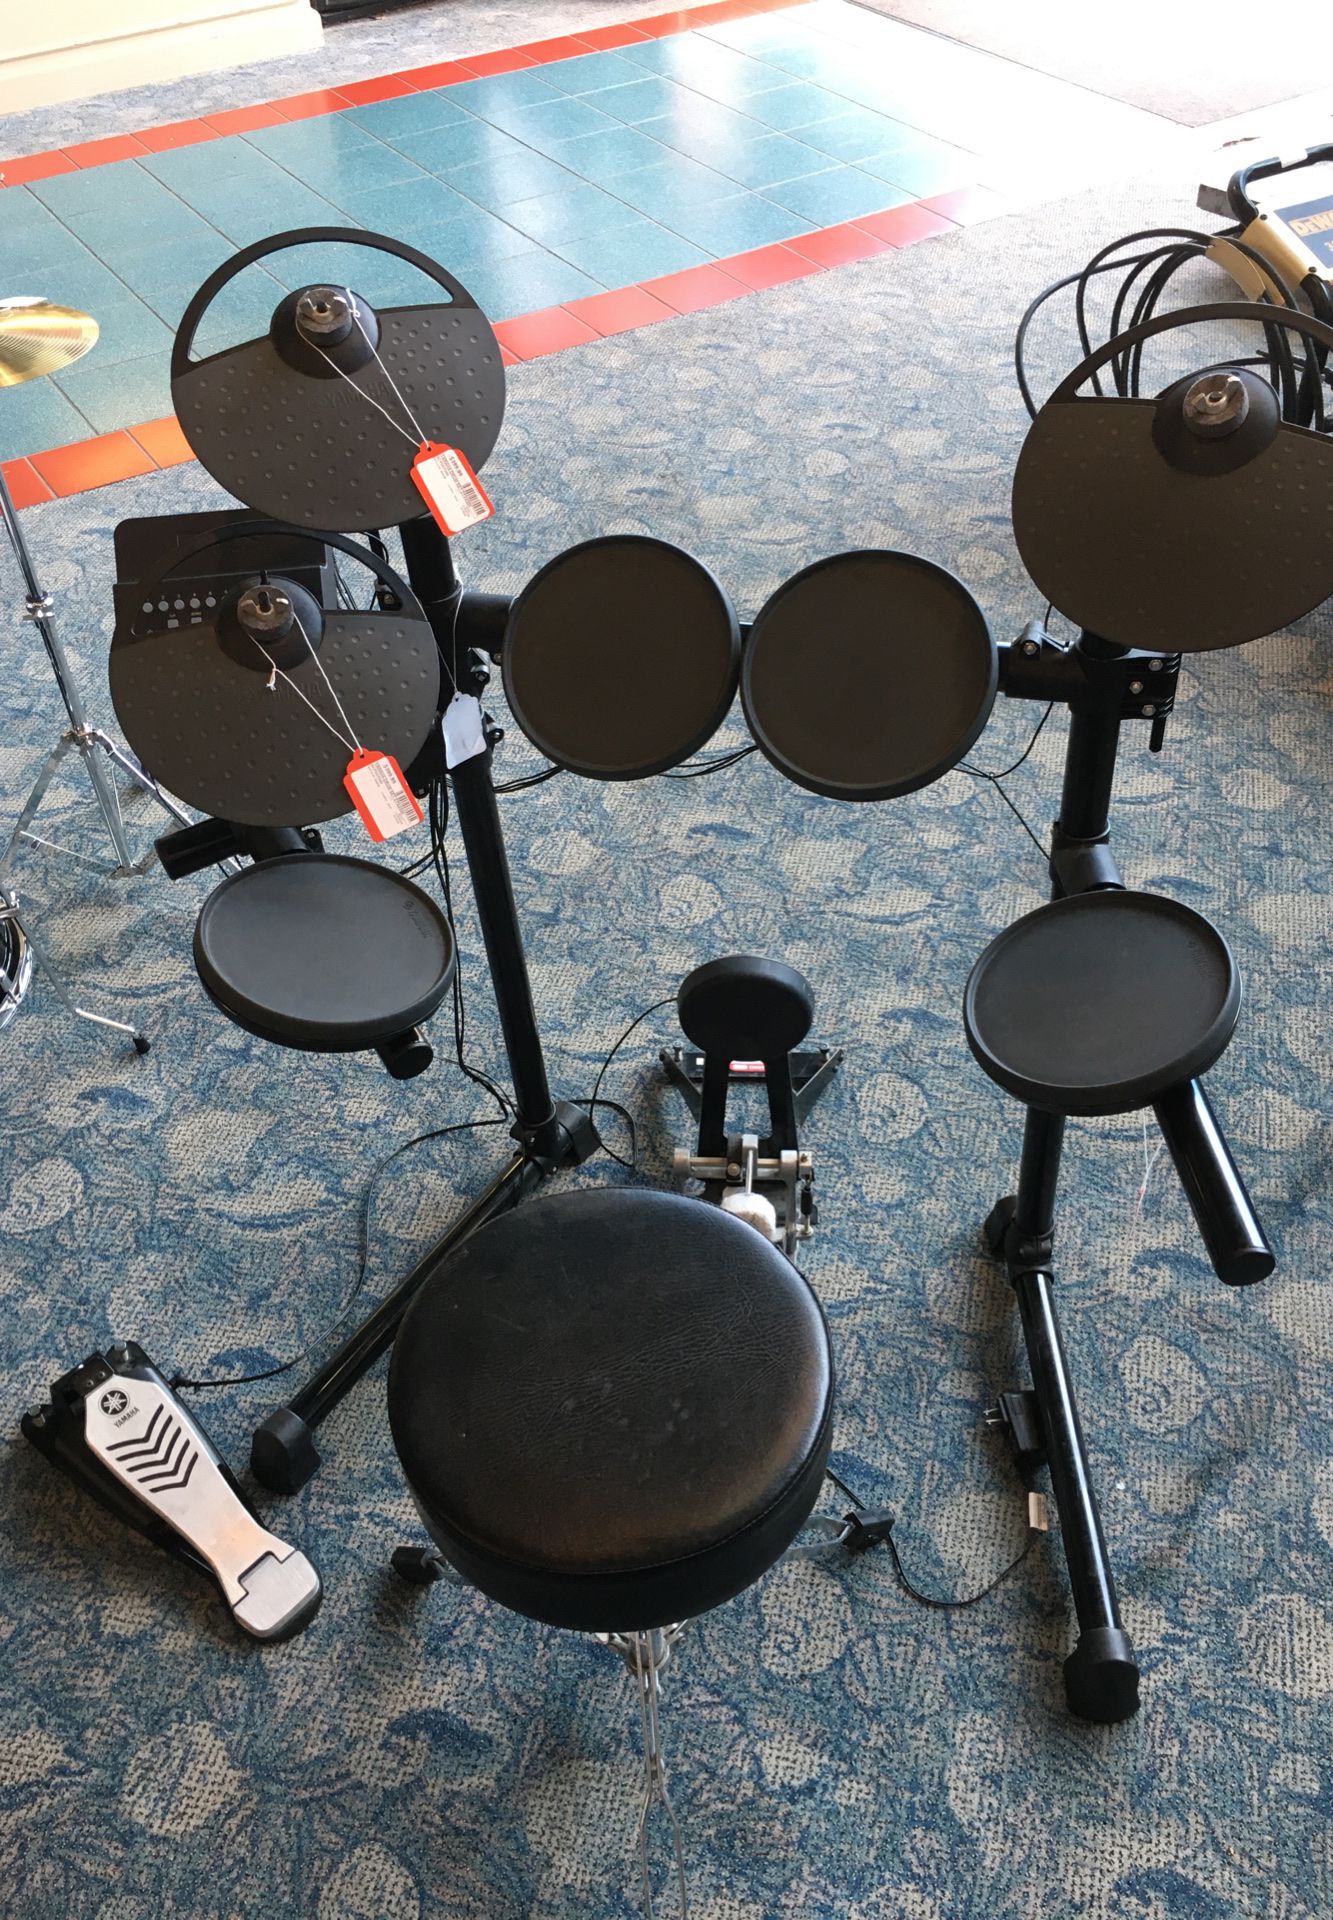 Yamaha drum set DTX430K pro audio electric drum set music live